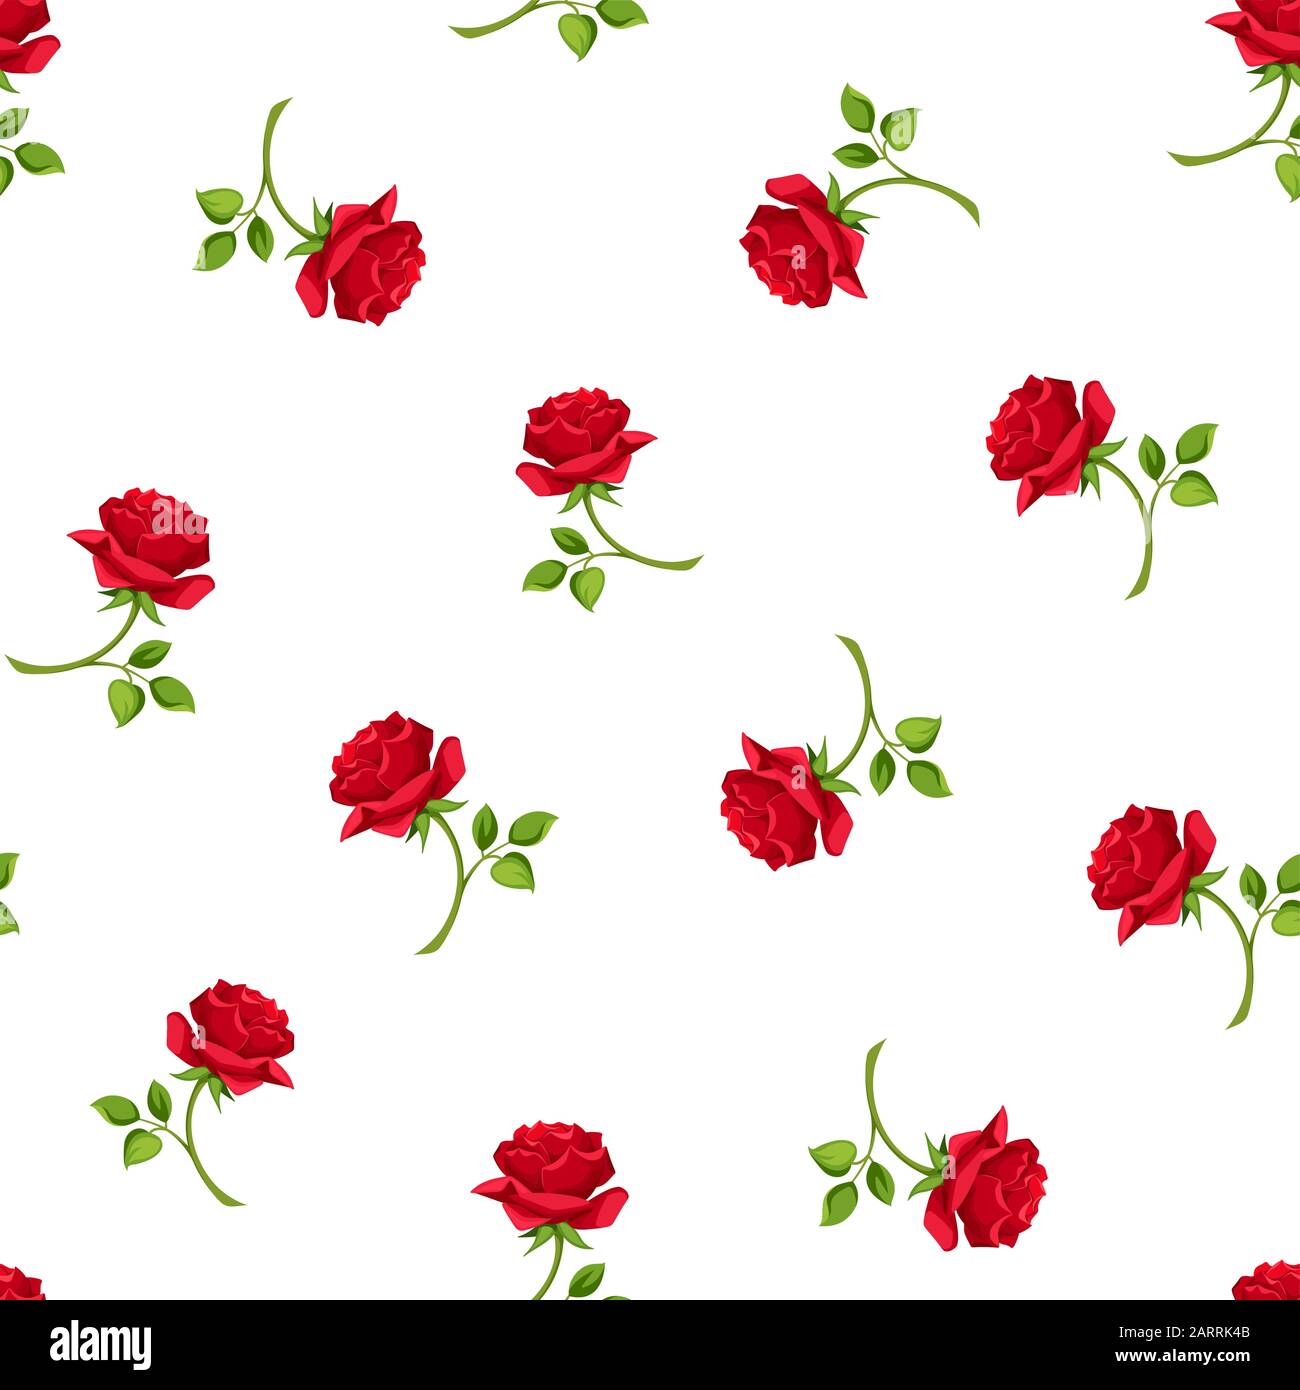 Vektor nahtlose Muster mit Rote rose Blumen auf einem weißen Hintergrund. Stock Vektor